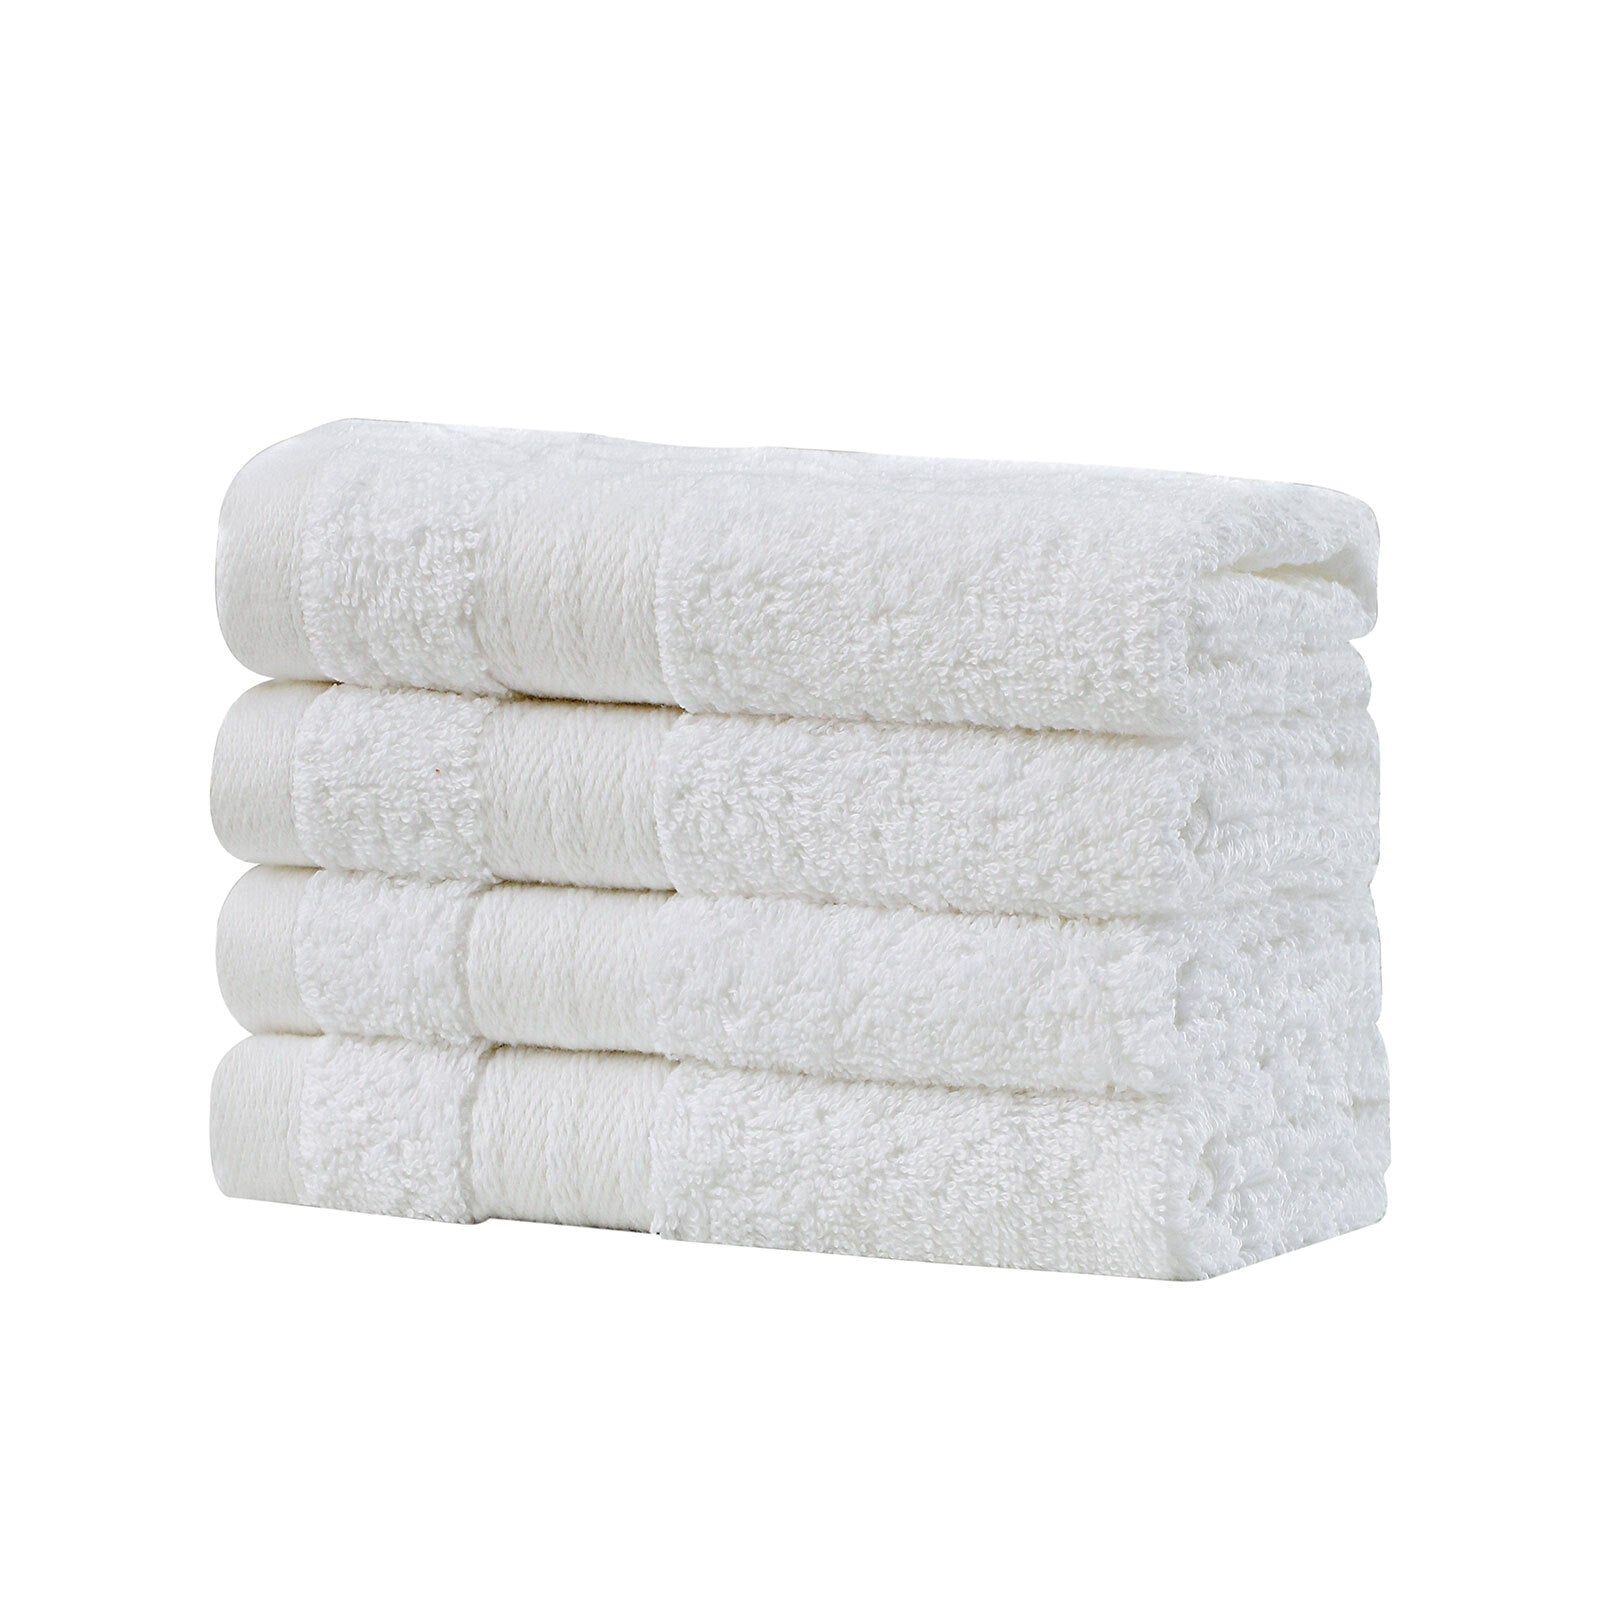 Linenland Bath Towel Set - 4 Piece Cotton Washcloths - White - Newstart Furniture